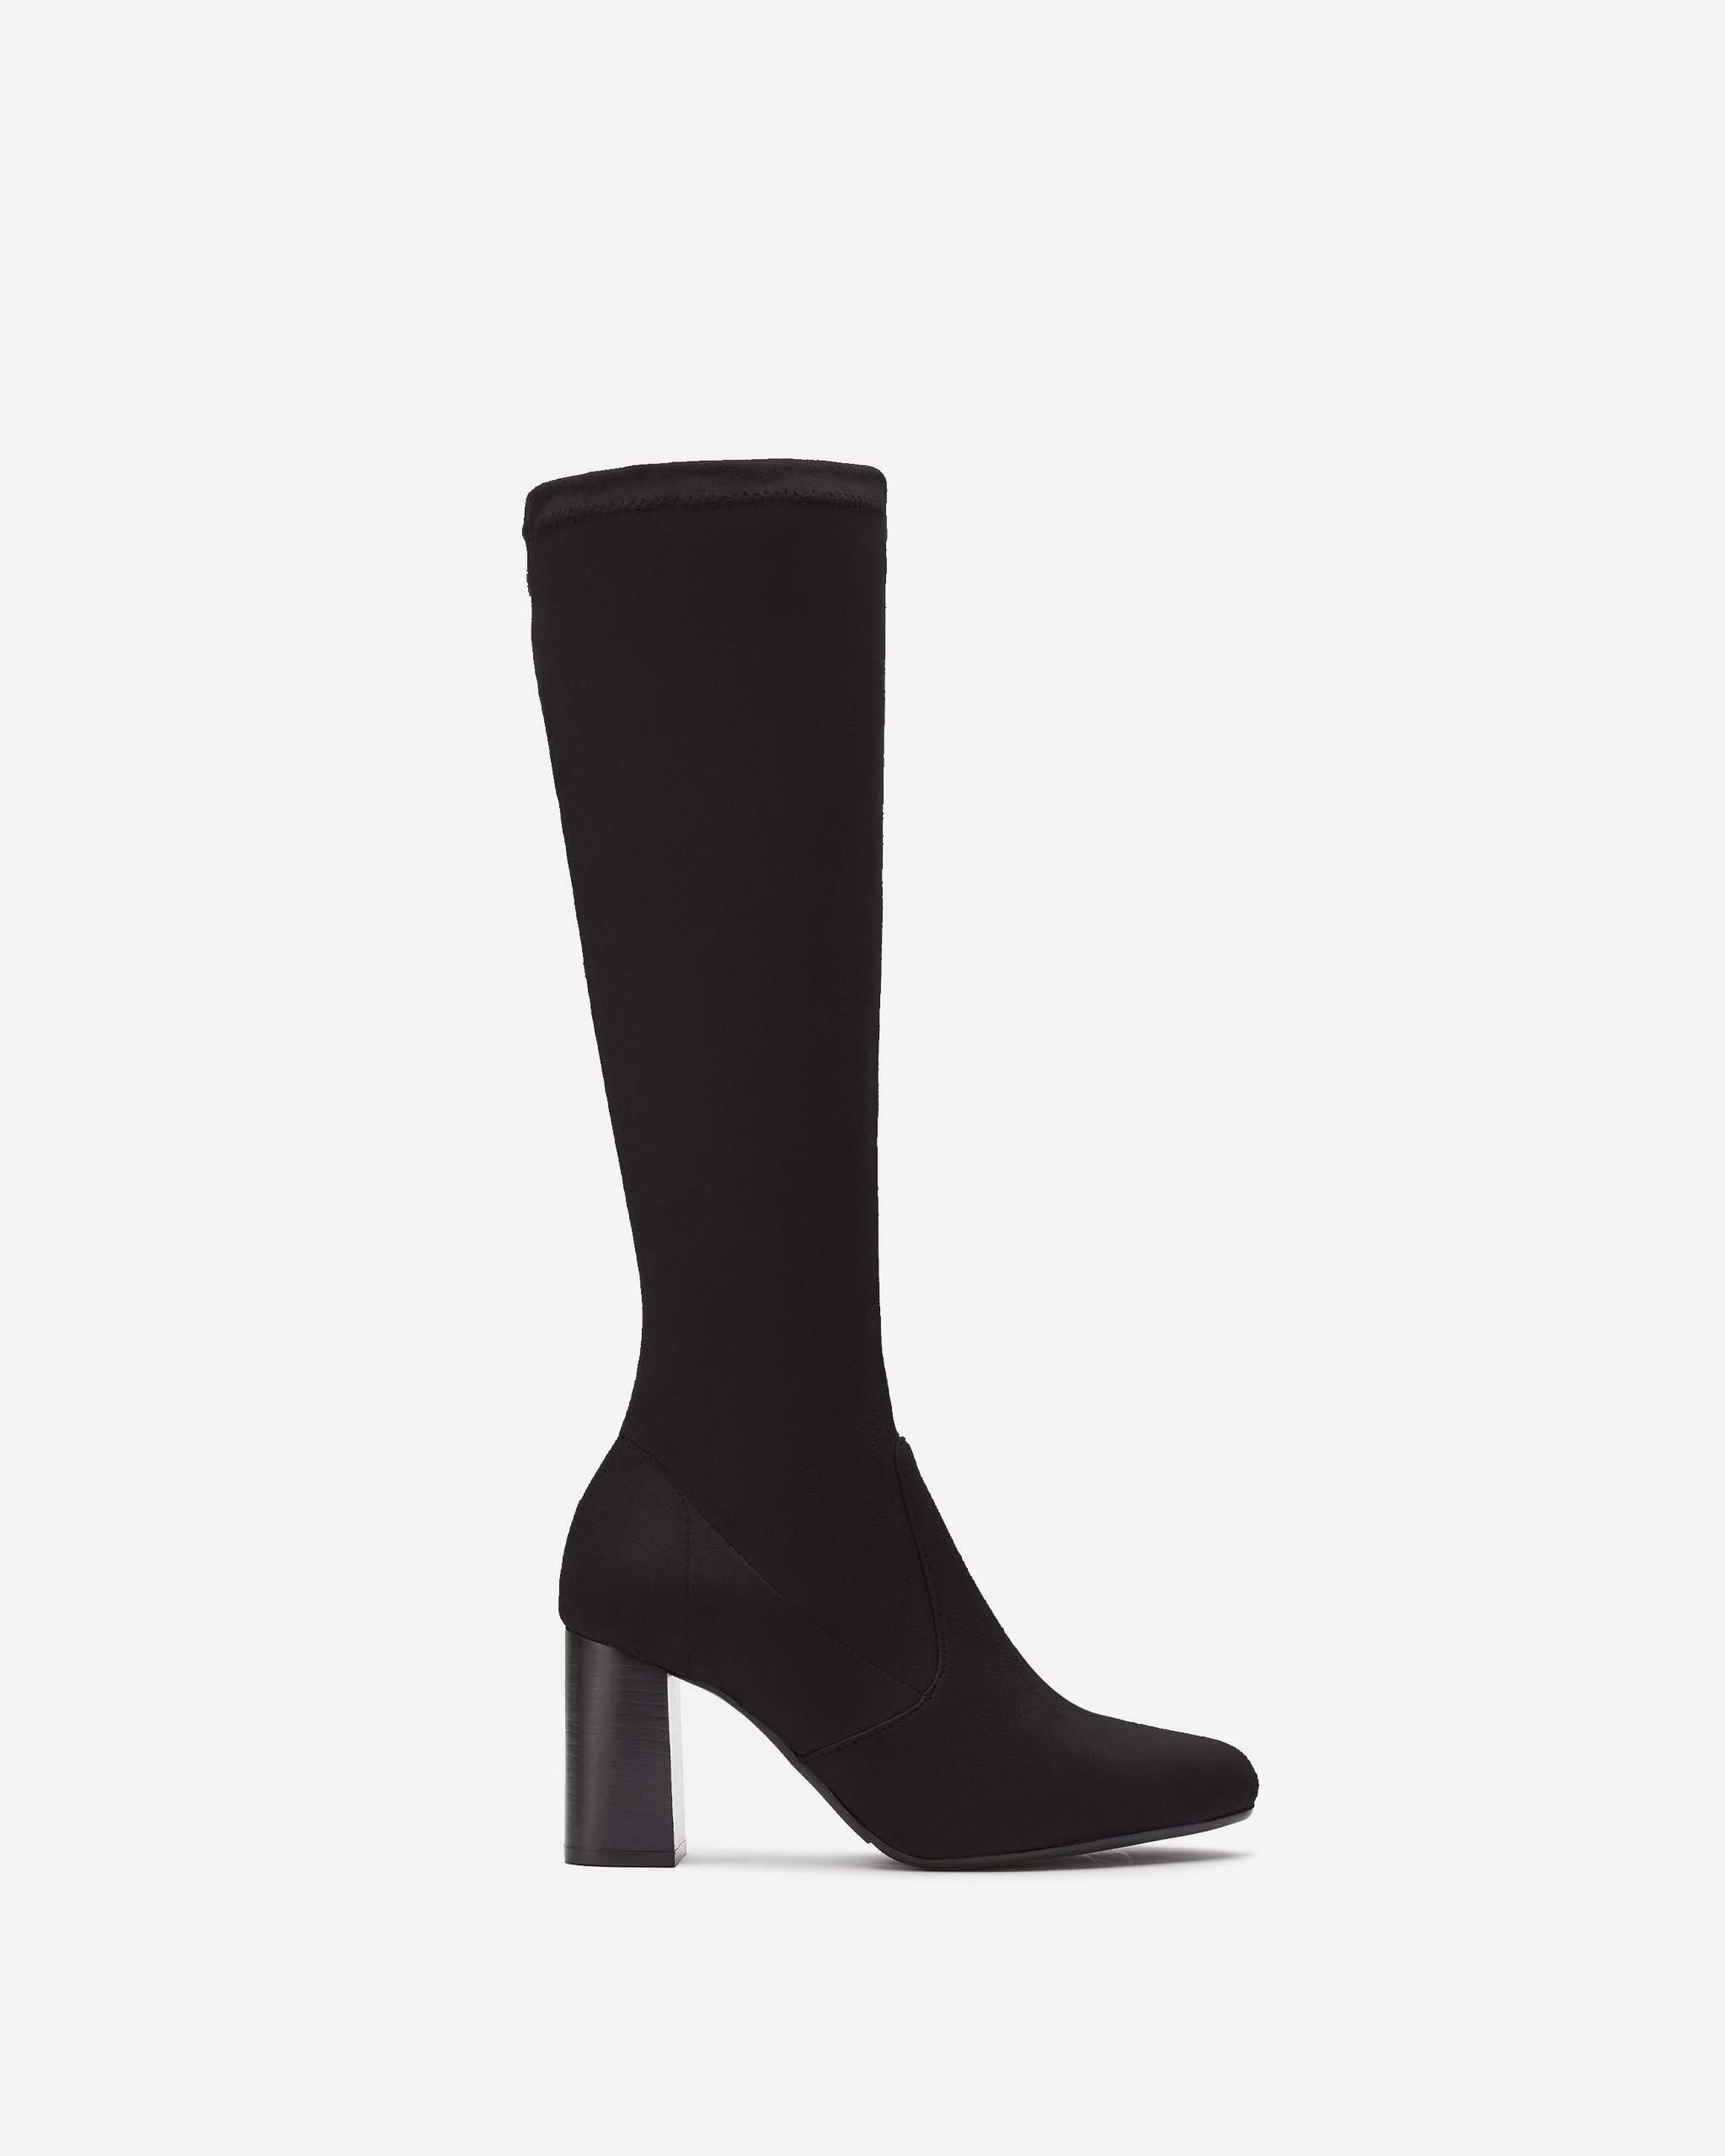 knee higb black suede heeled boot